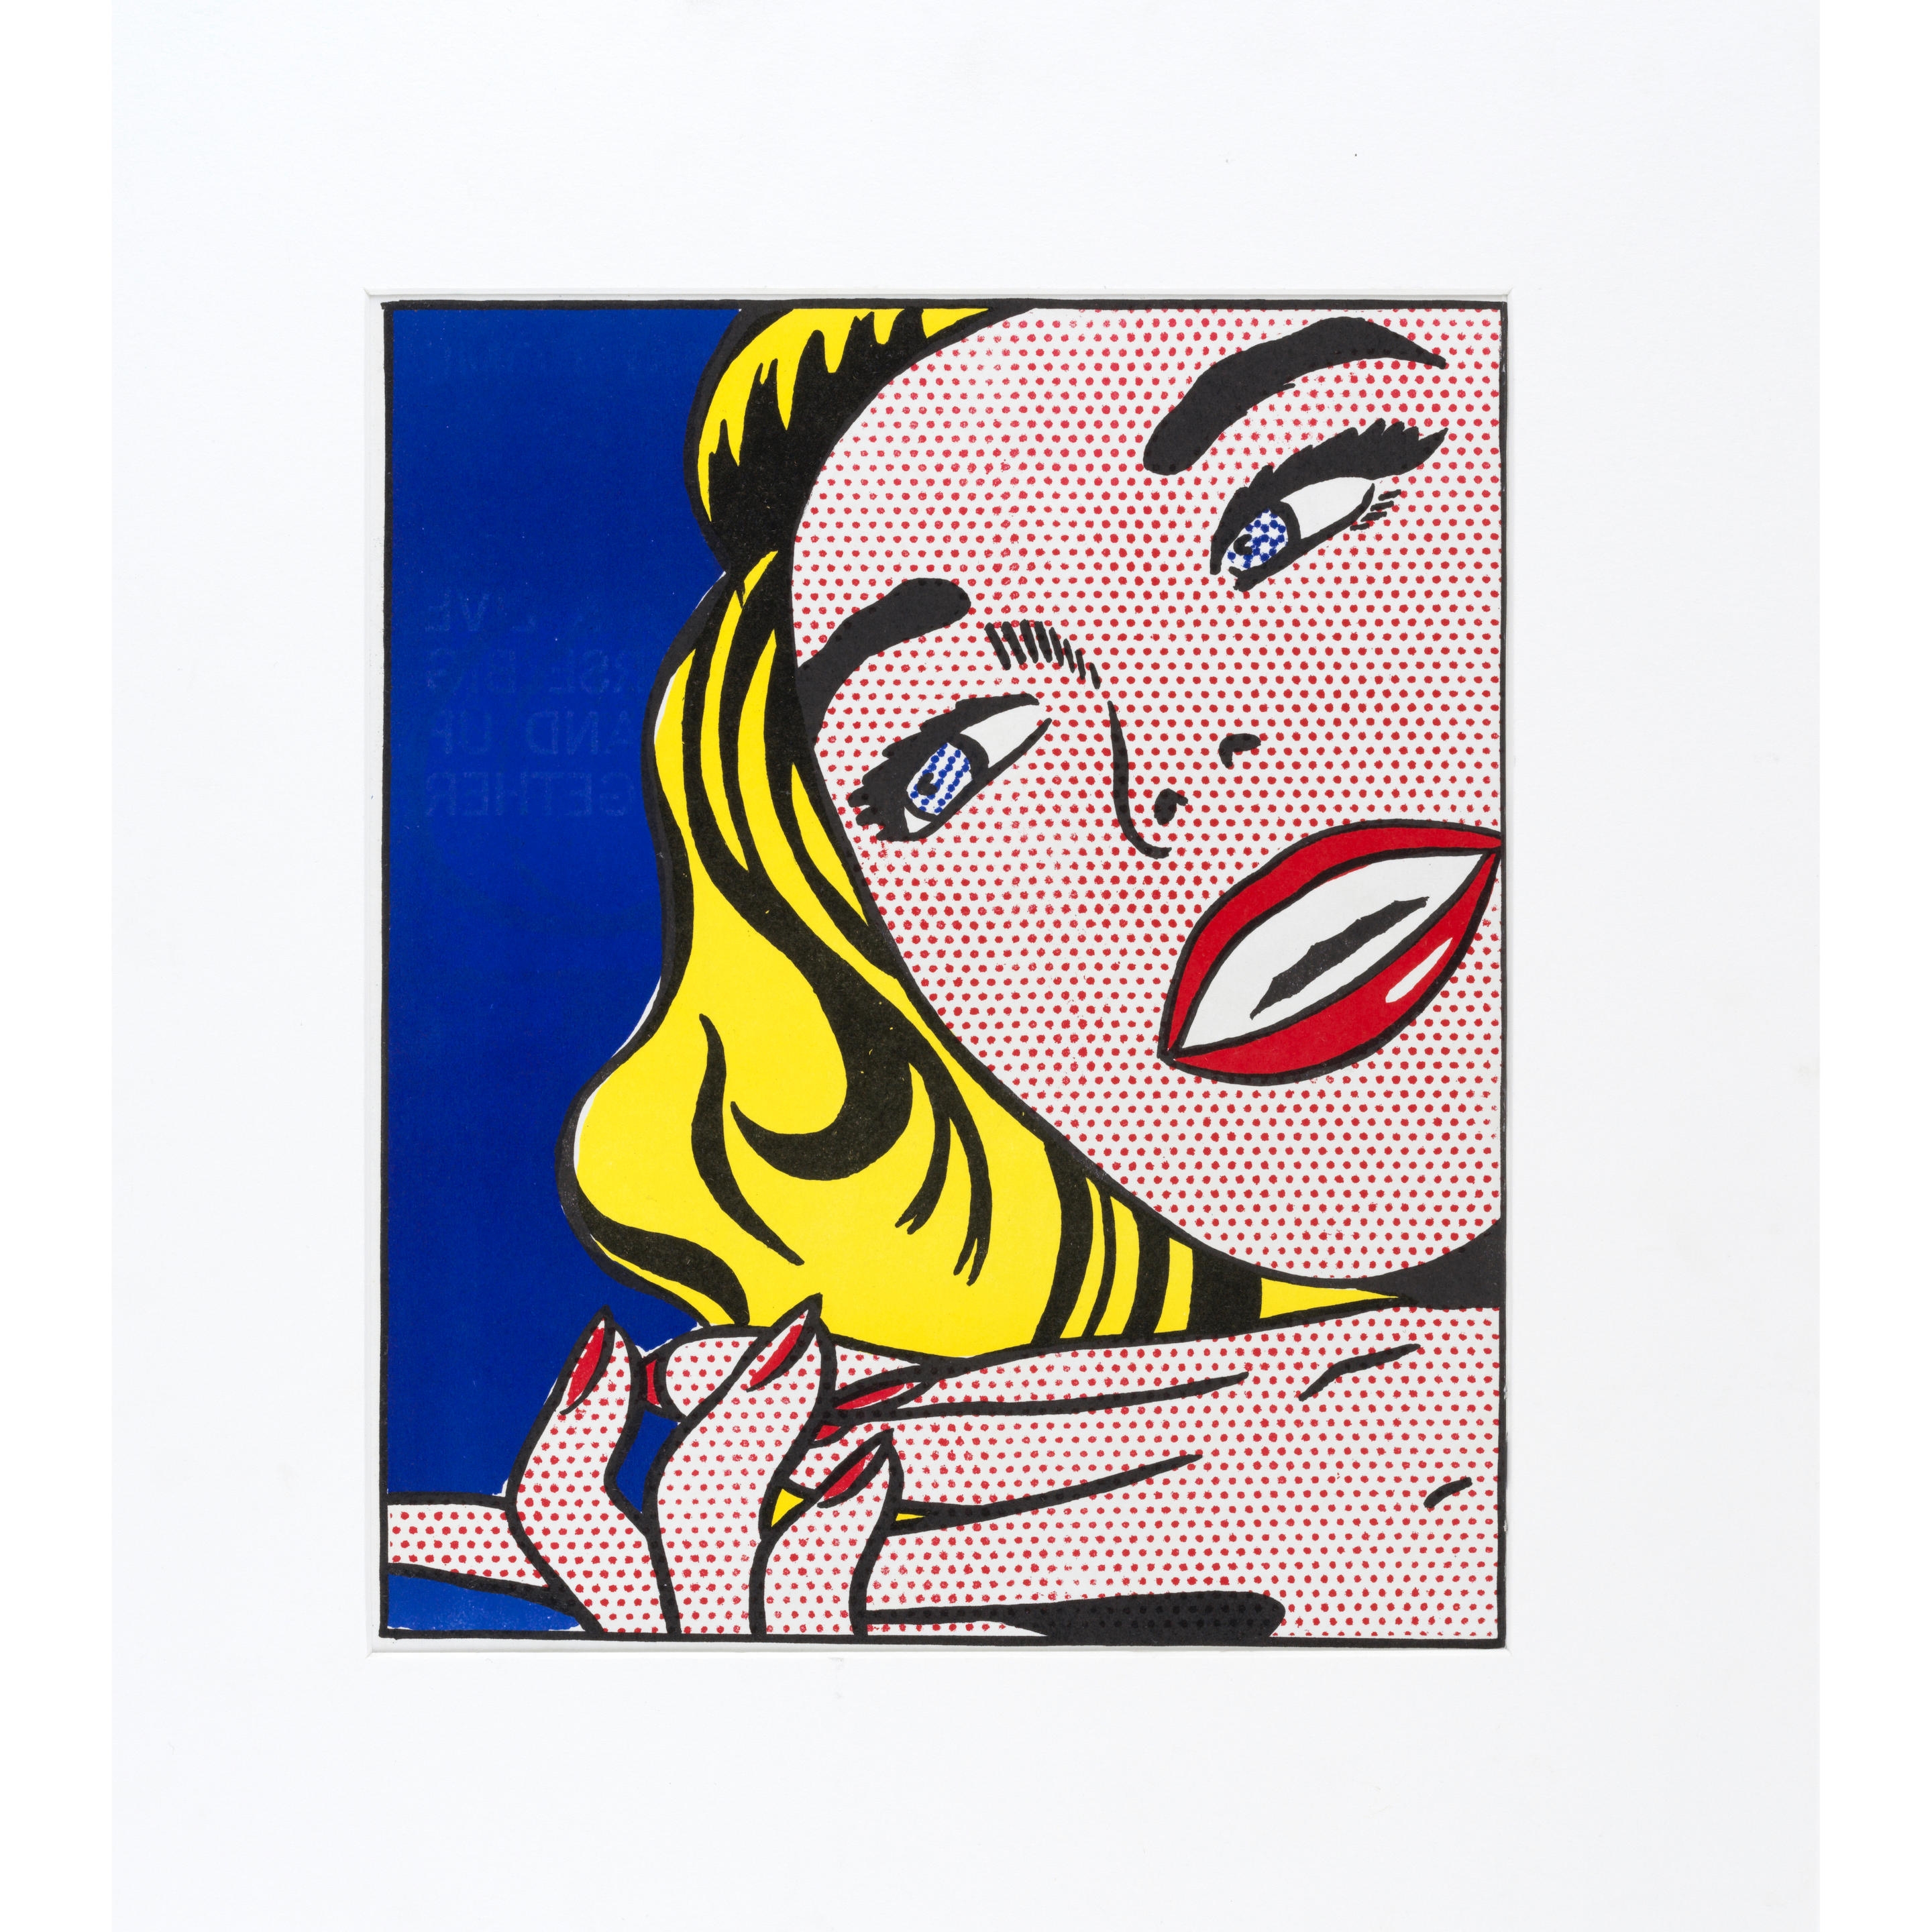 Girl, from One Cent Life - Roy Lichtenstein